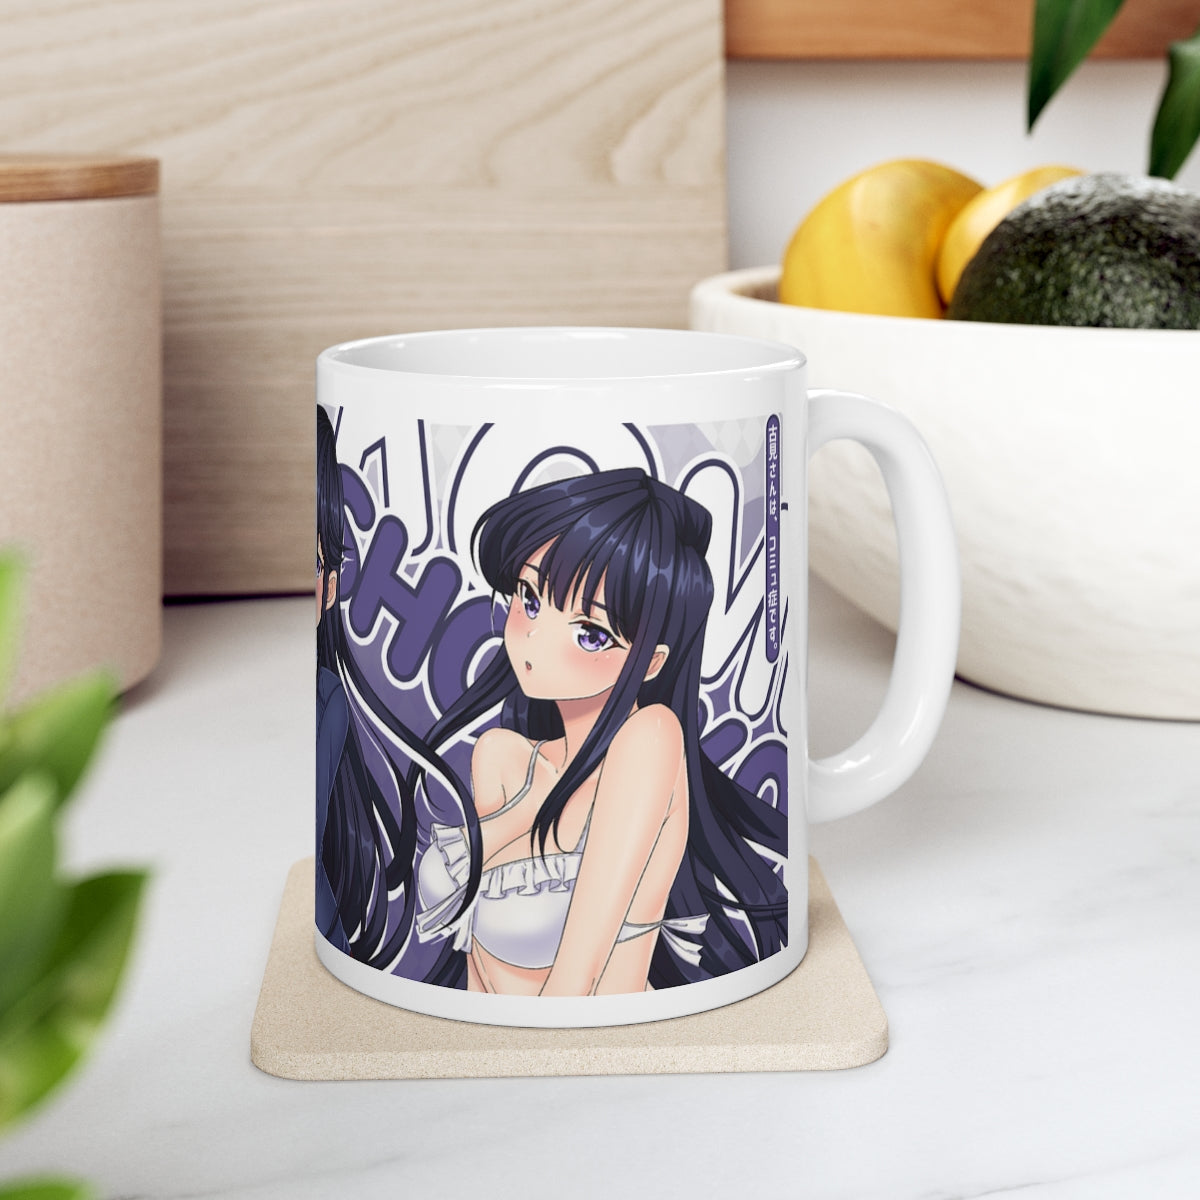 Komi Coffee Mugs